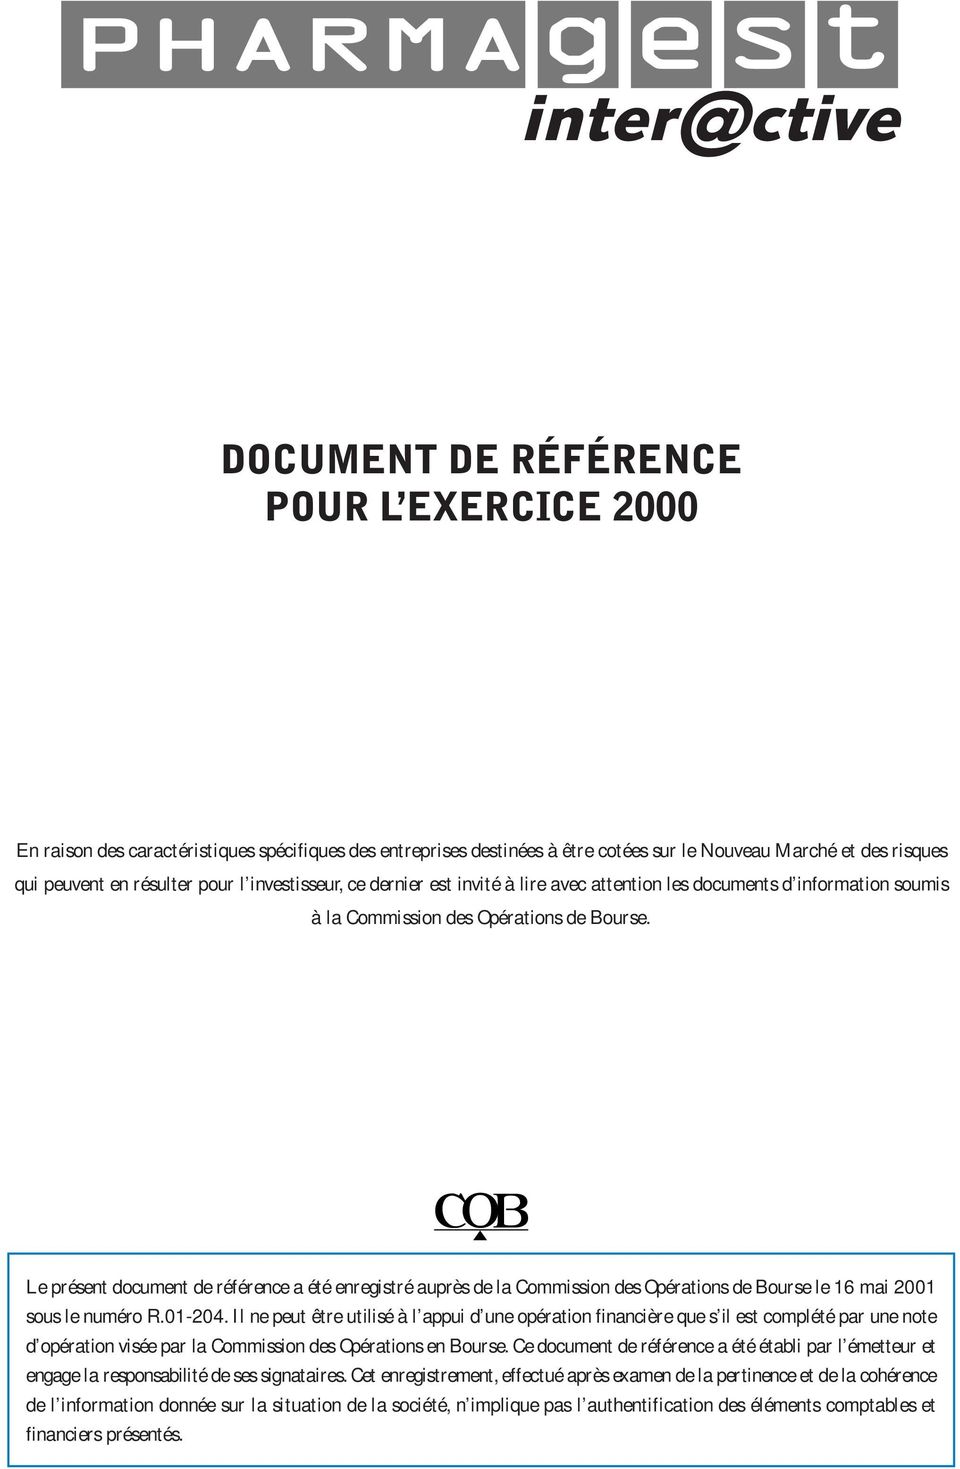 Le présent document de référence a été enregistré auprès de la Commission des Opérations de Bourse le 16 mai 2001 sous le numéro R.01-204.